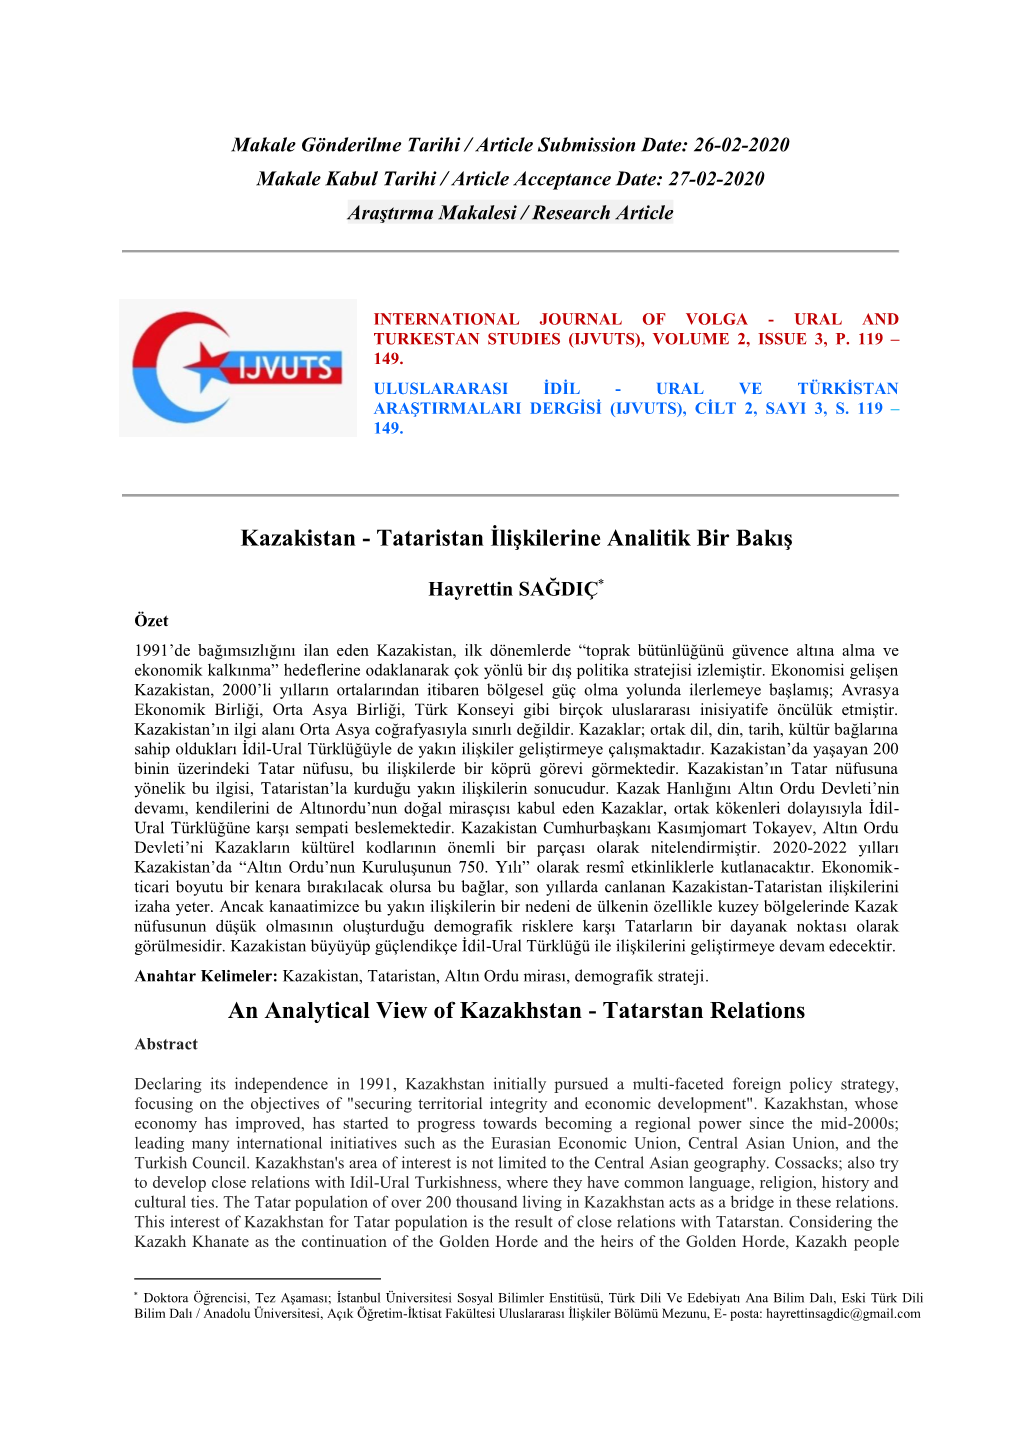 Kazakistan - Tataristan İlişkilerine Analitik Bir Bakış